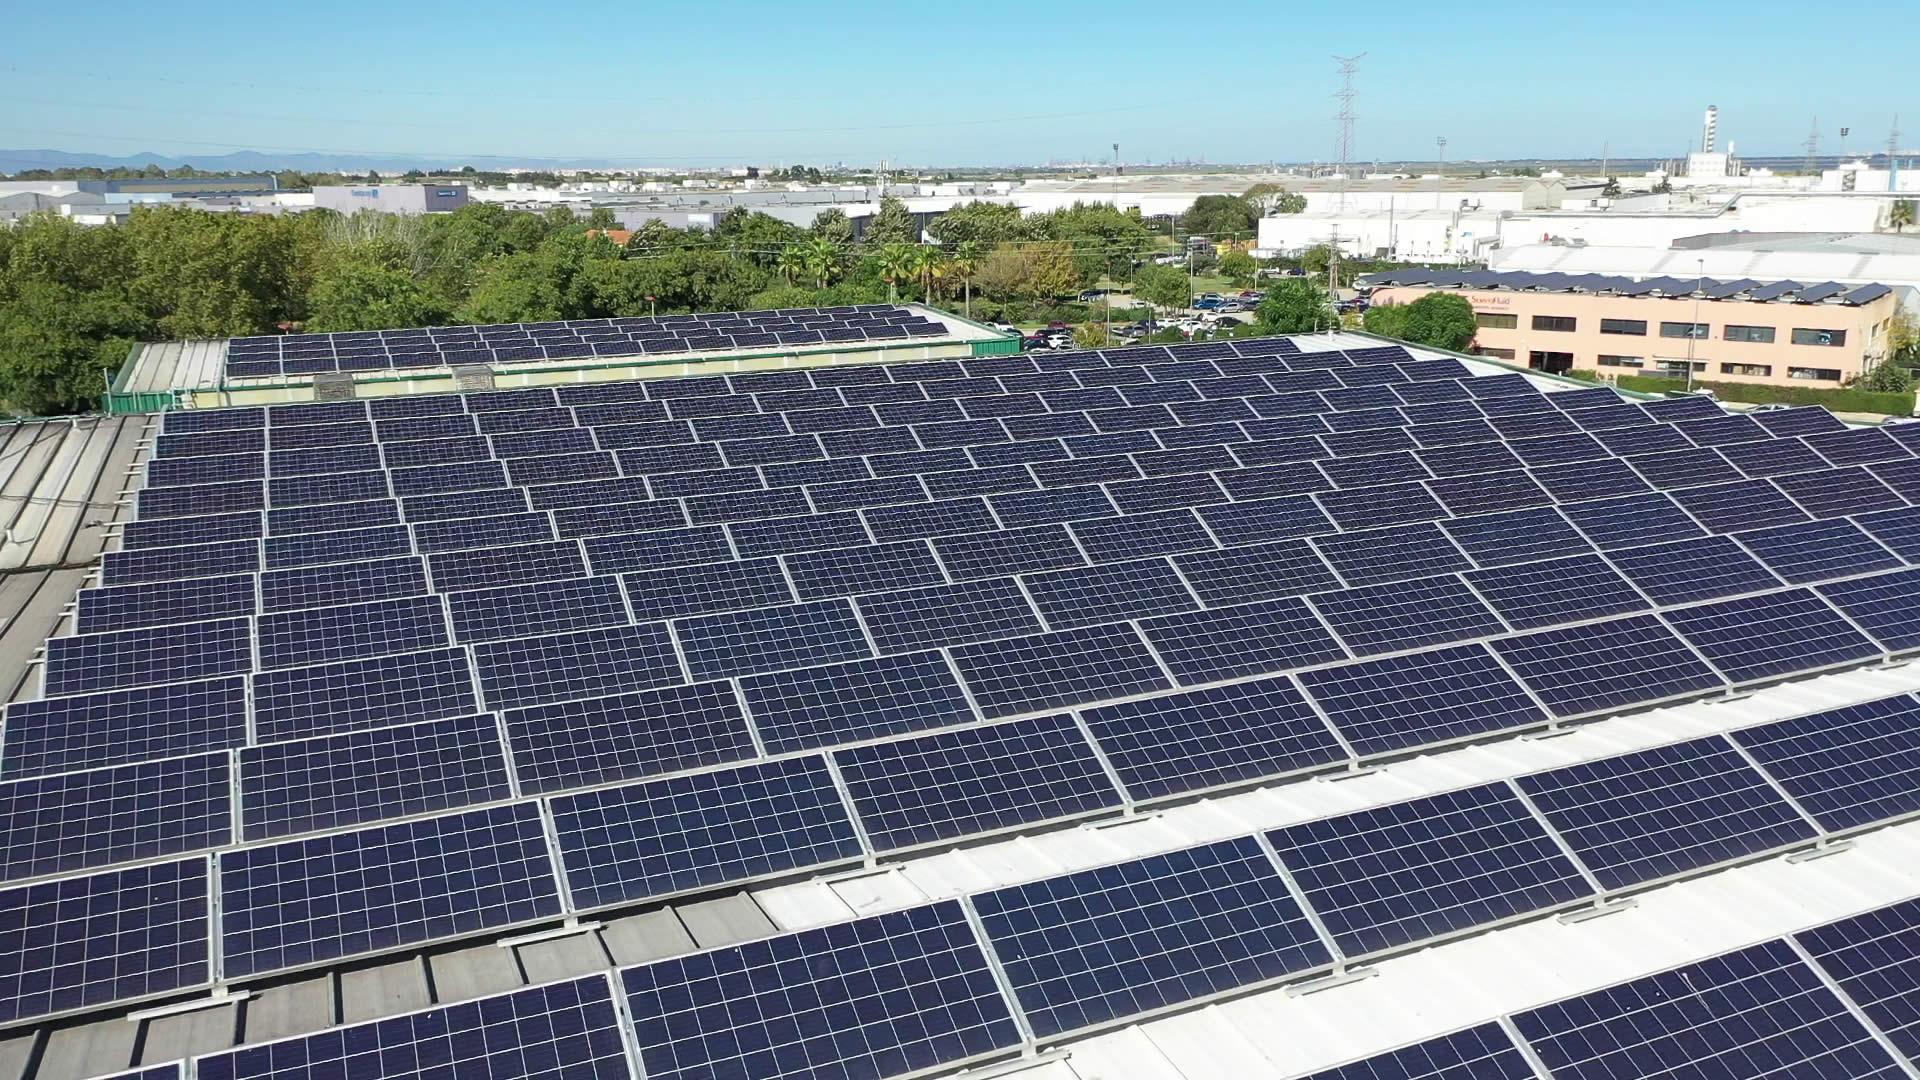 Instalación de autoconsumo fotovoltaico en Vaersa Picassent, Valencia - Eidf Solar